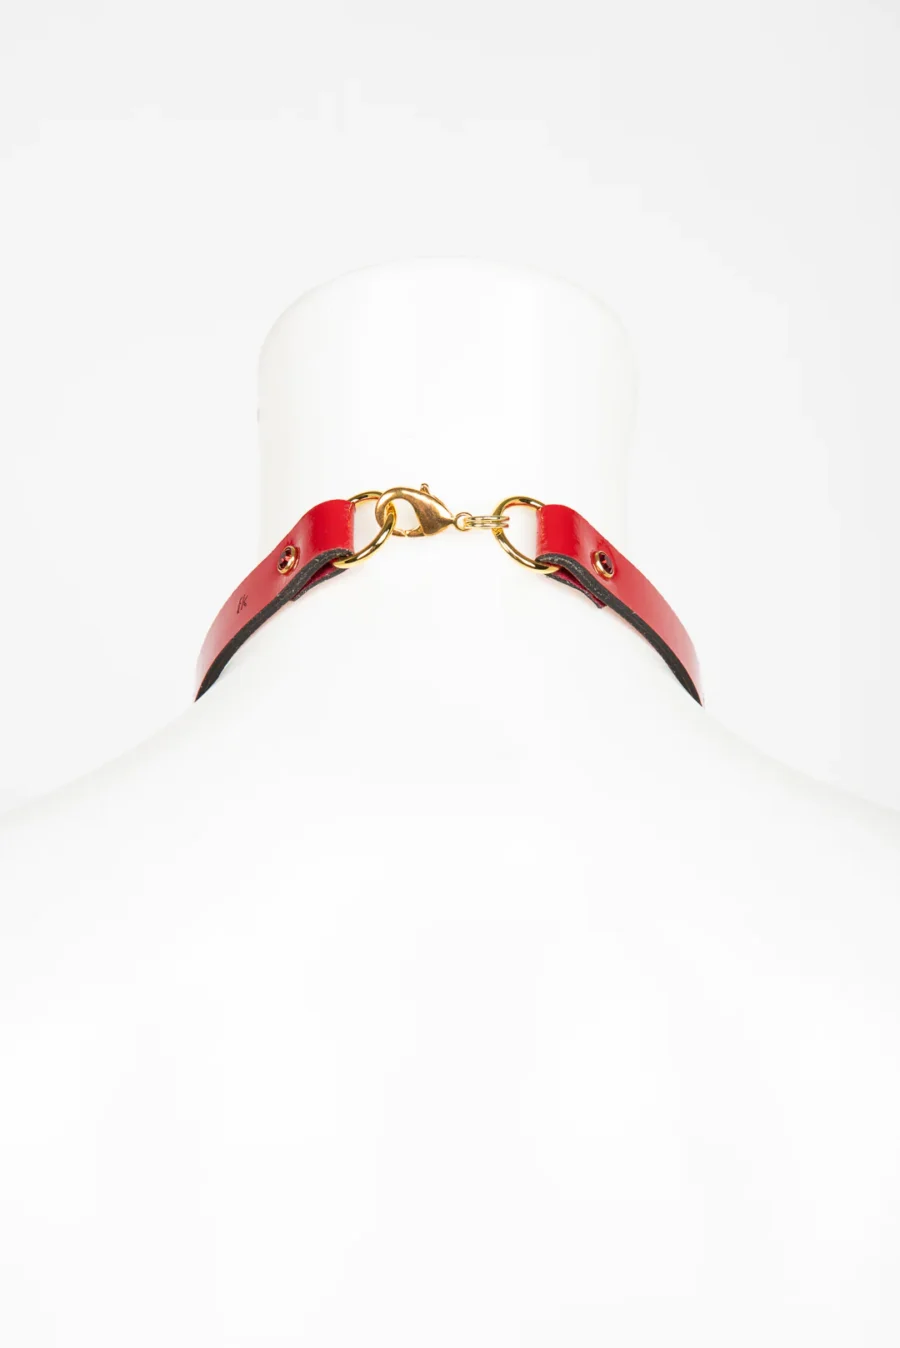 Fraulein Kink Bianco Rosso Nero Cross Halsband 17